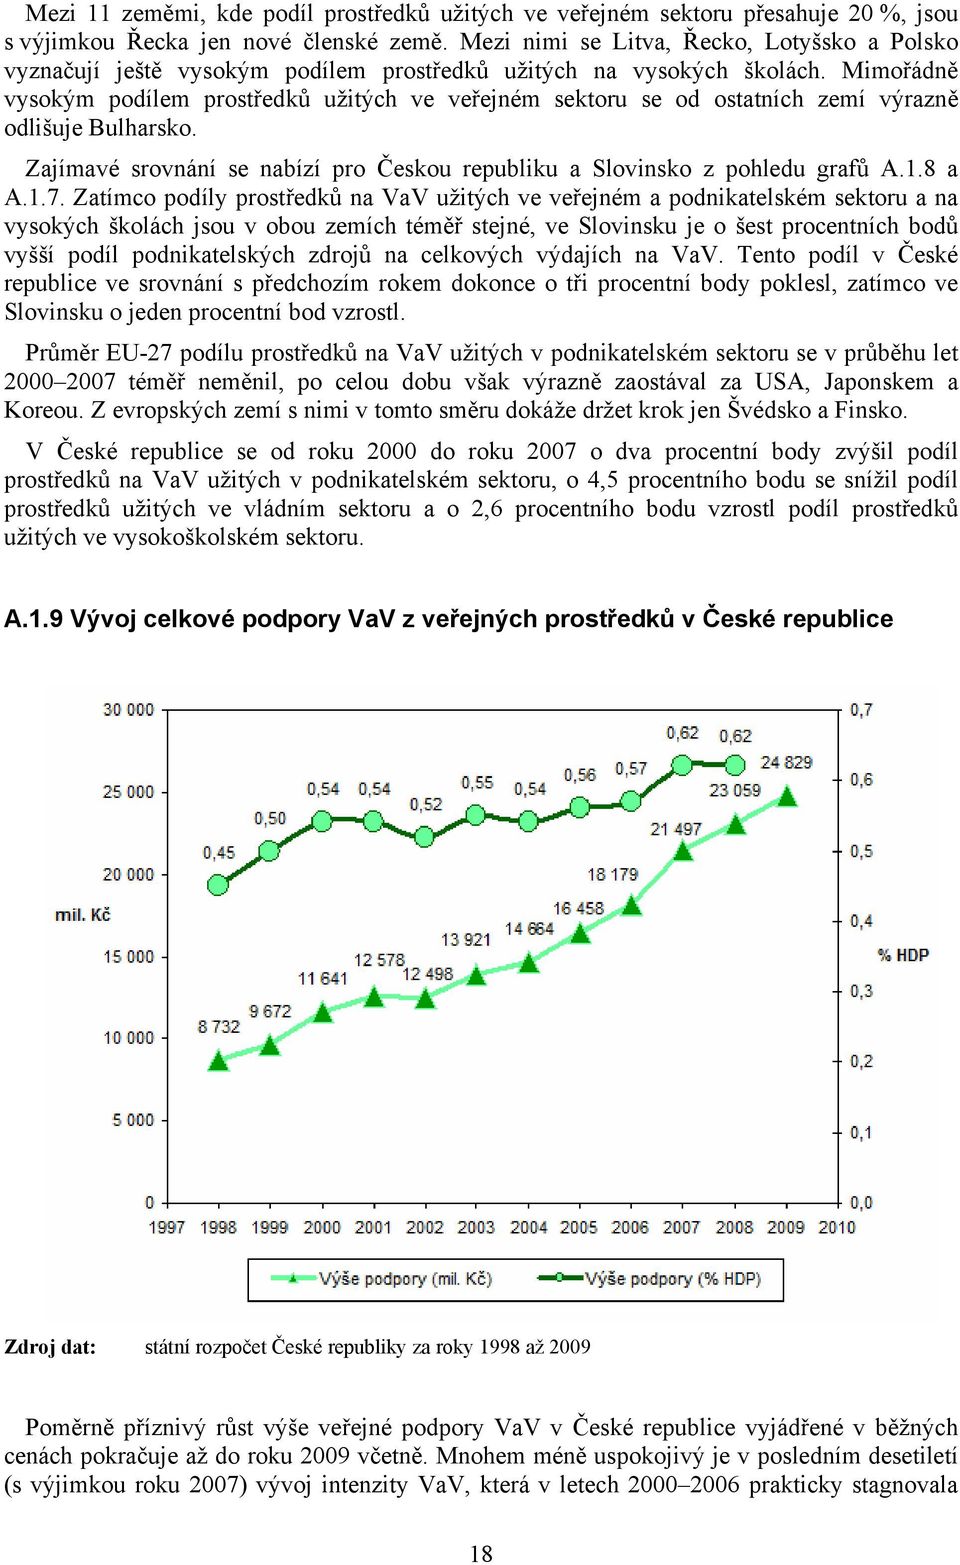 Mimořádně vysokým podílem prostředků užitých ve veřejném sektoru se od ostatních zemí výrazně odlišuje Bulharsko. Zajímavé srovnání se nabízí pro Českou republiku a Slovinsko z pohledu grafů A.1.